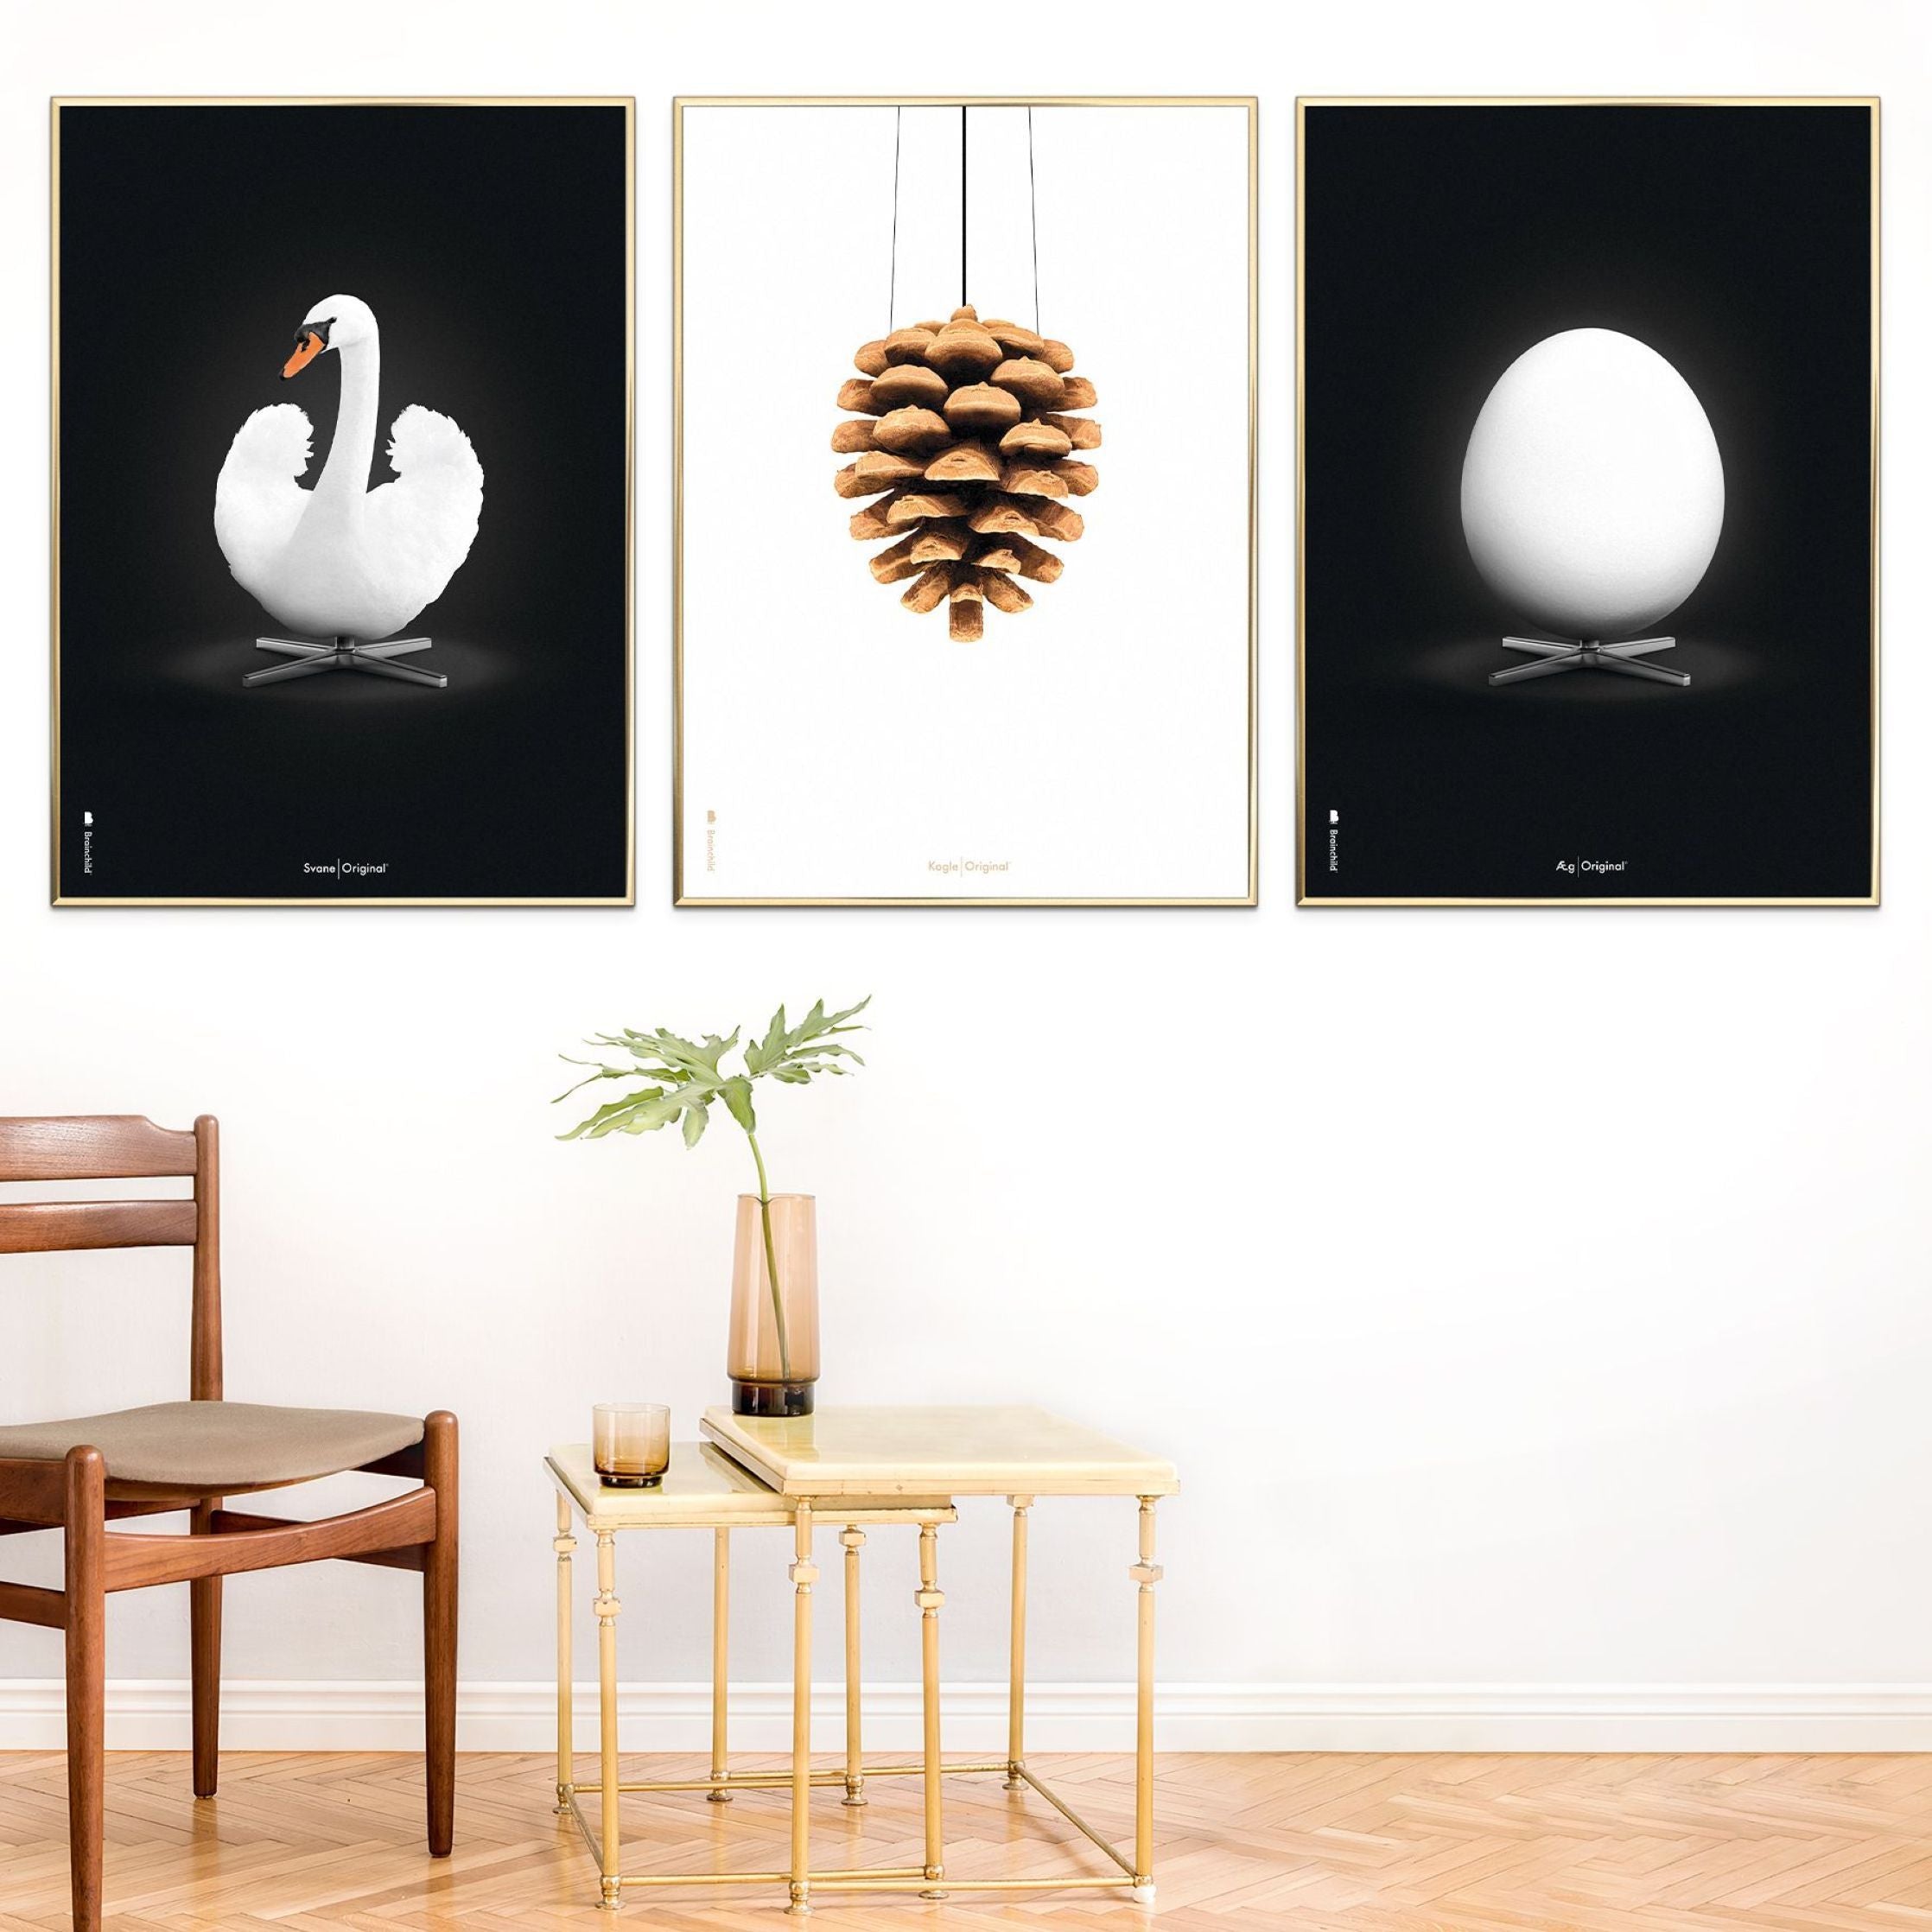 创意鸡蛋经典海报，由浅木A5制成的框架，黑色背景